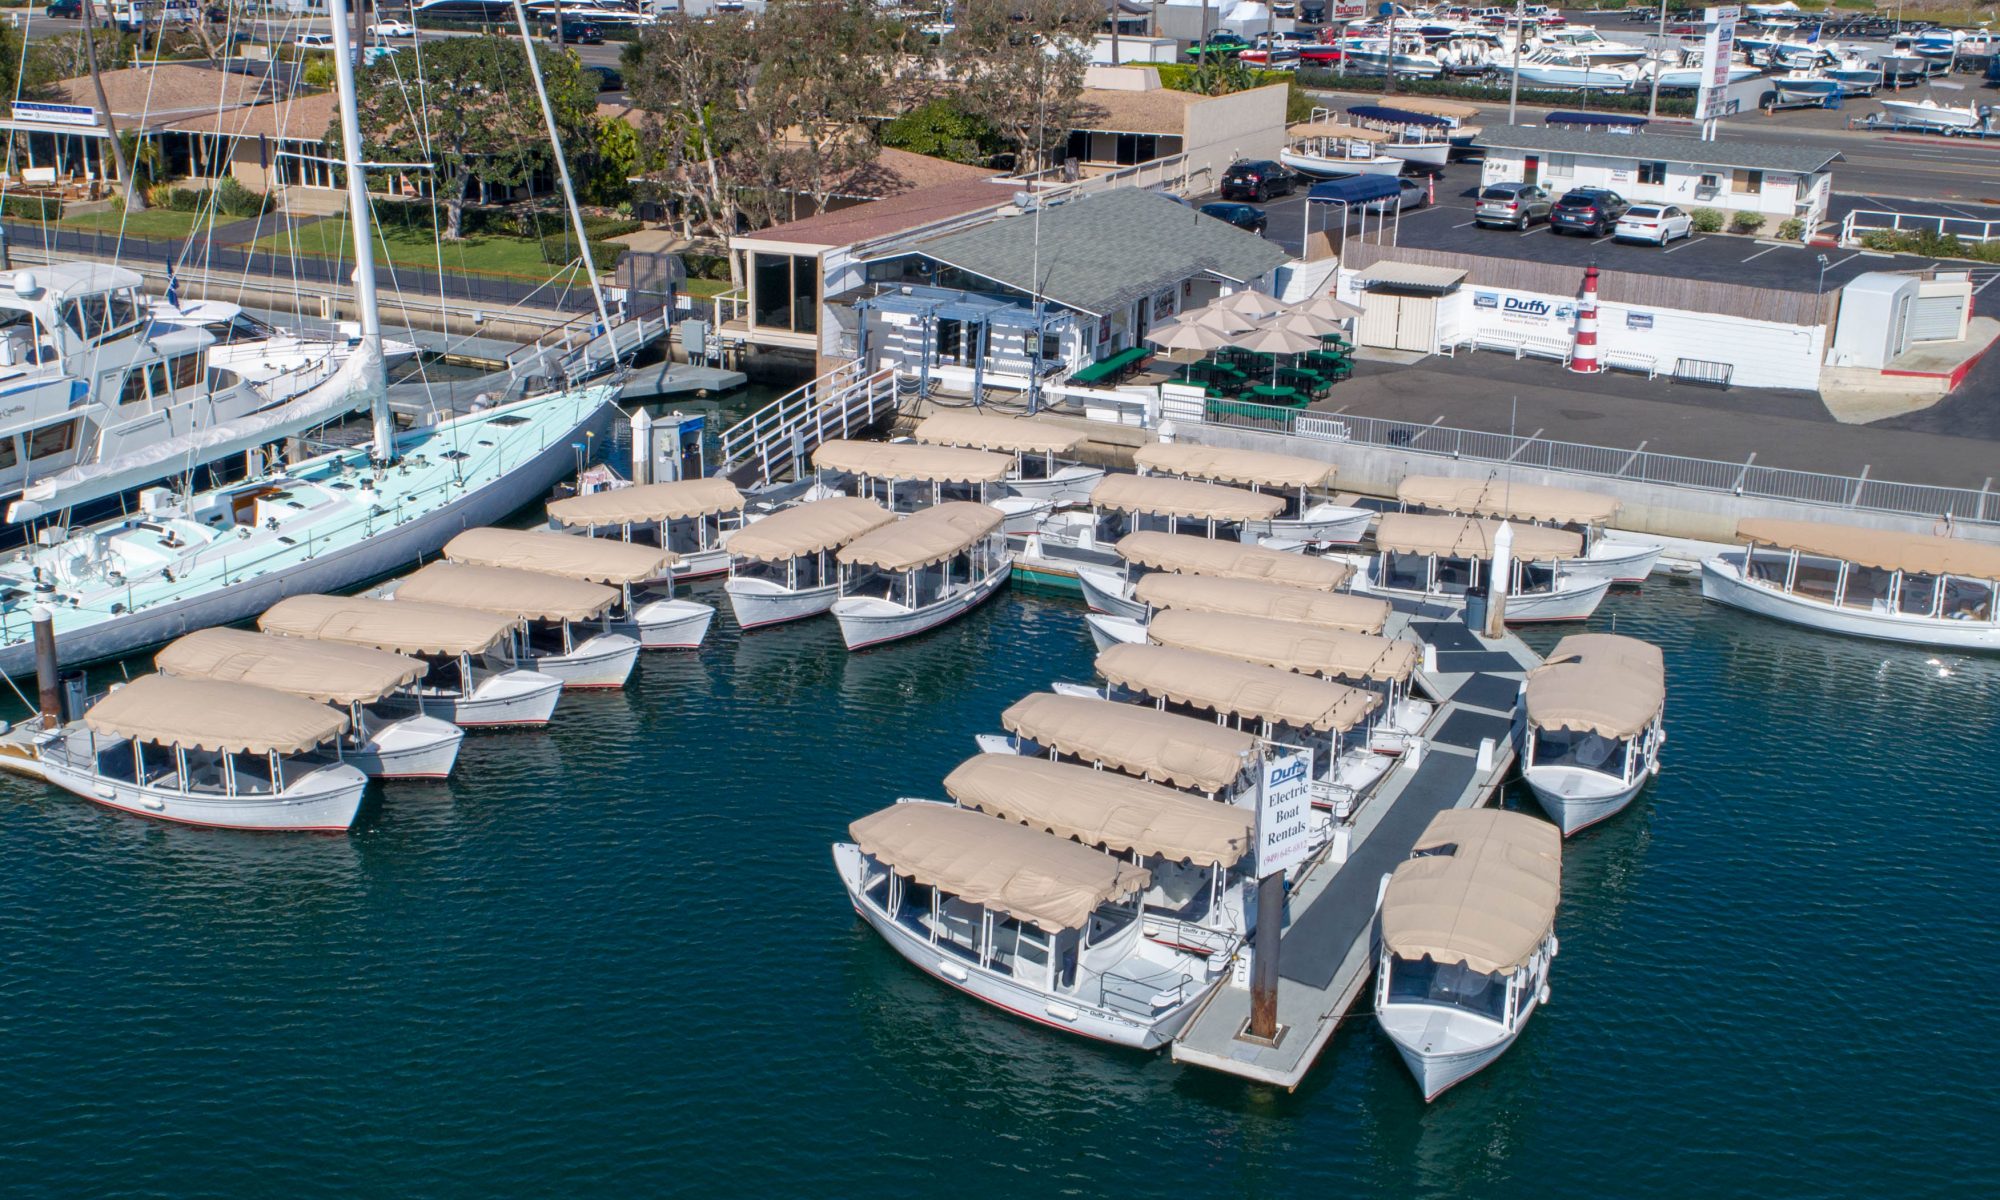 duffy electric boats rental site in Newport Beach, CA